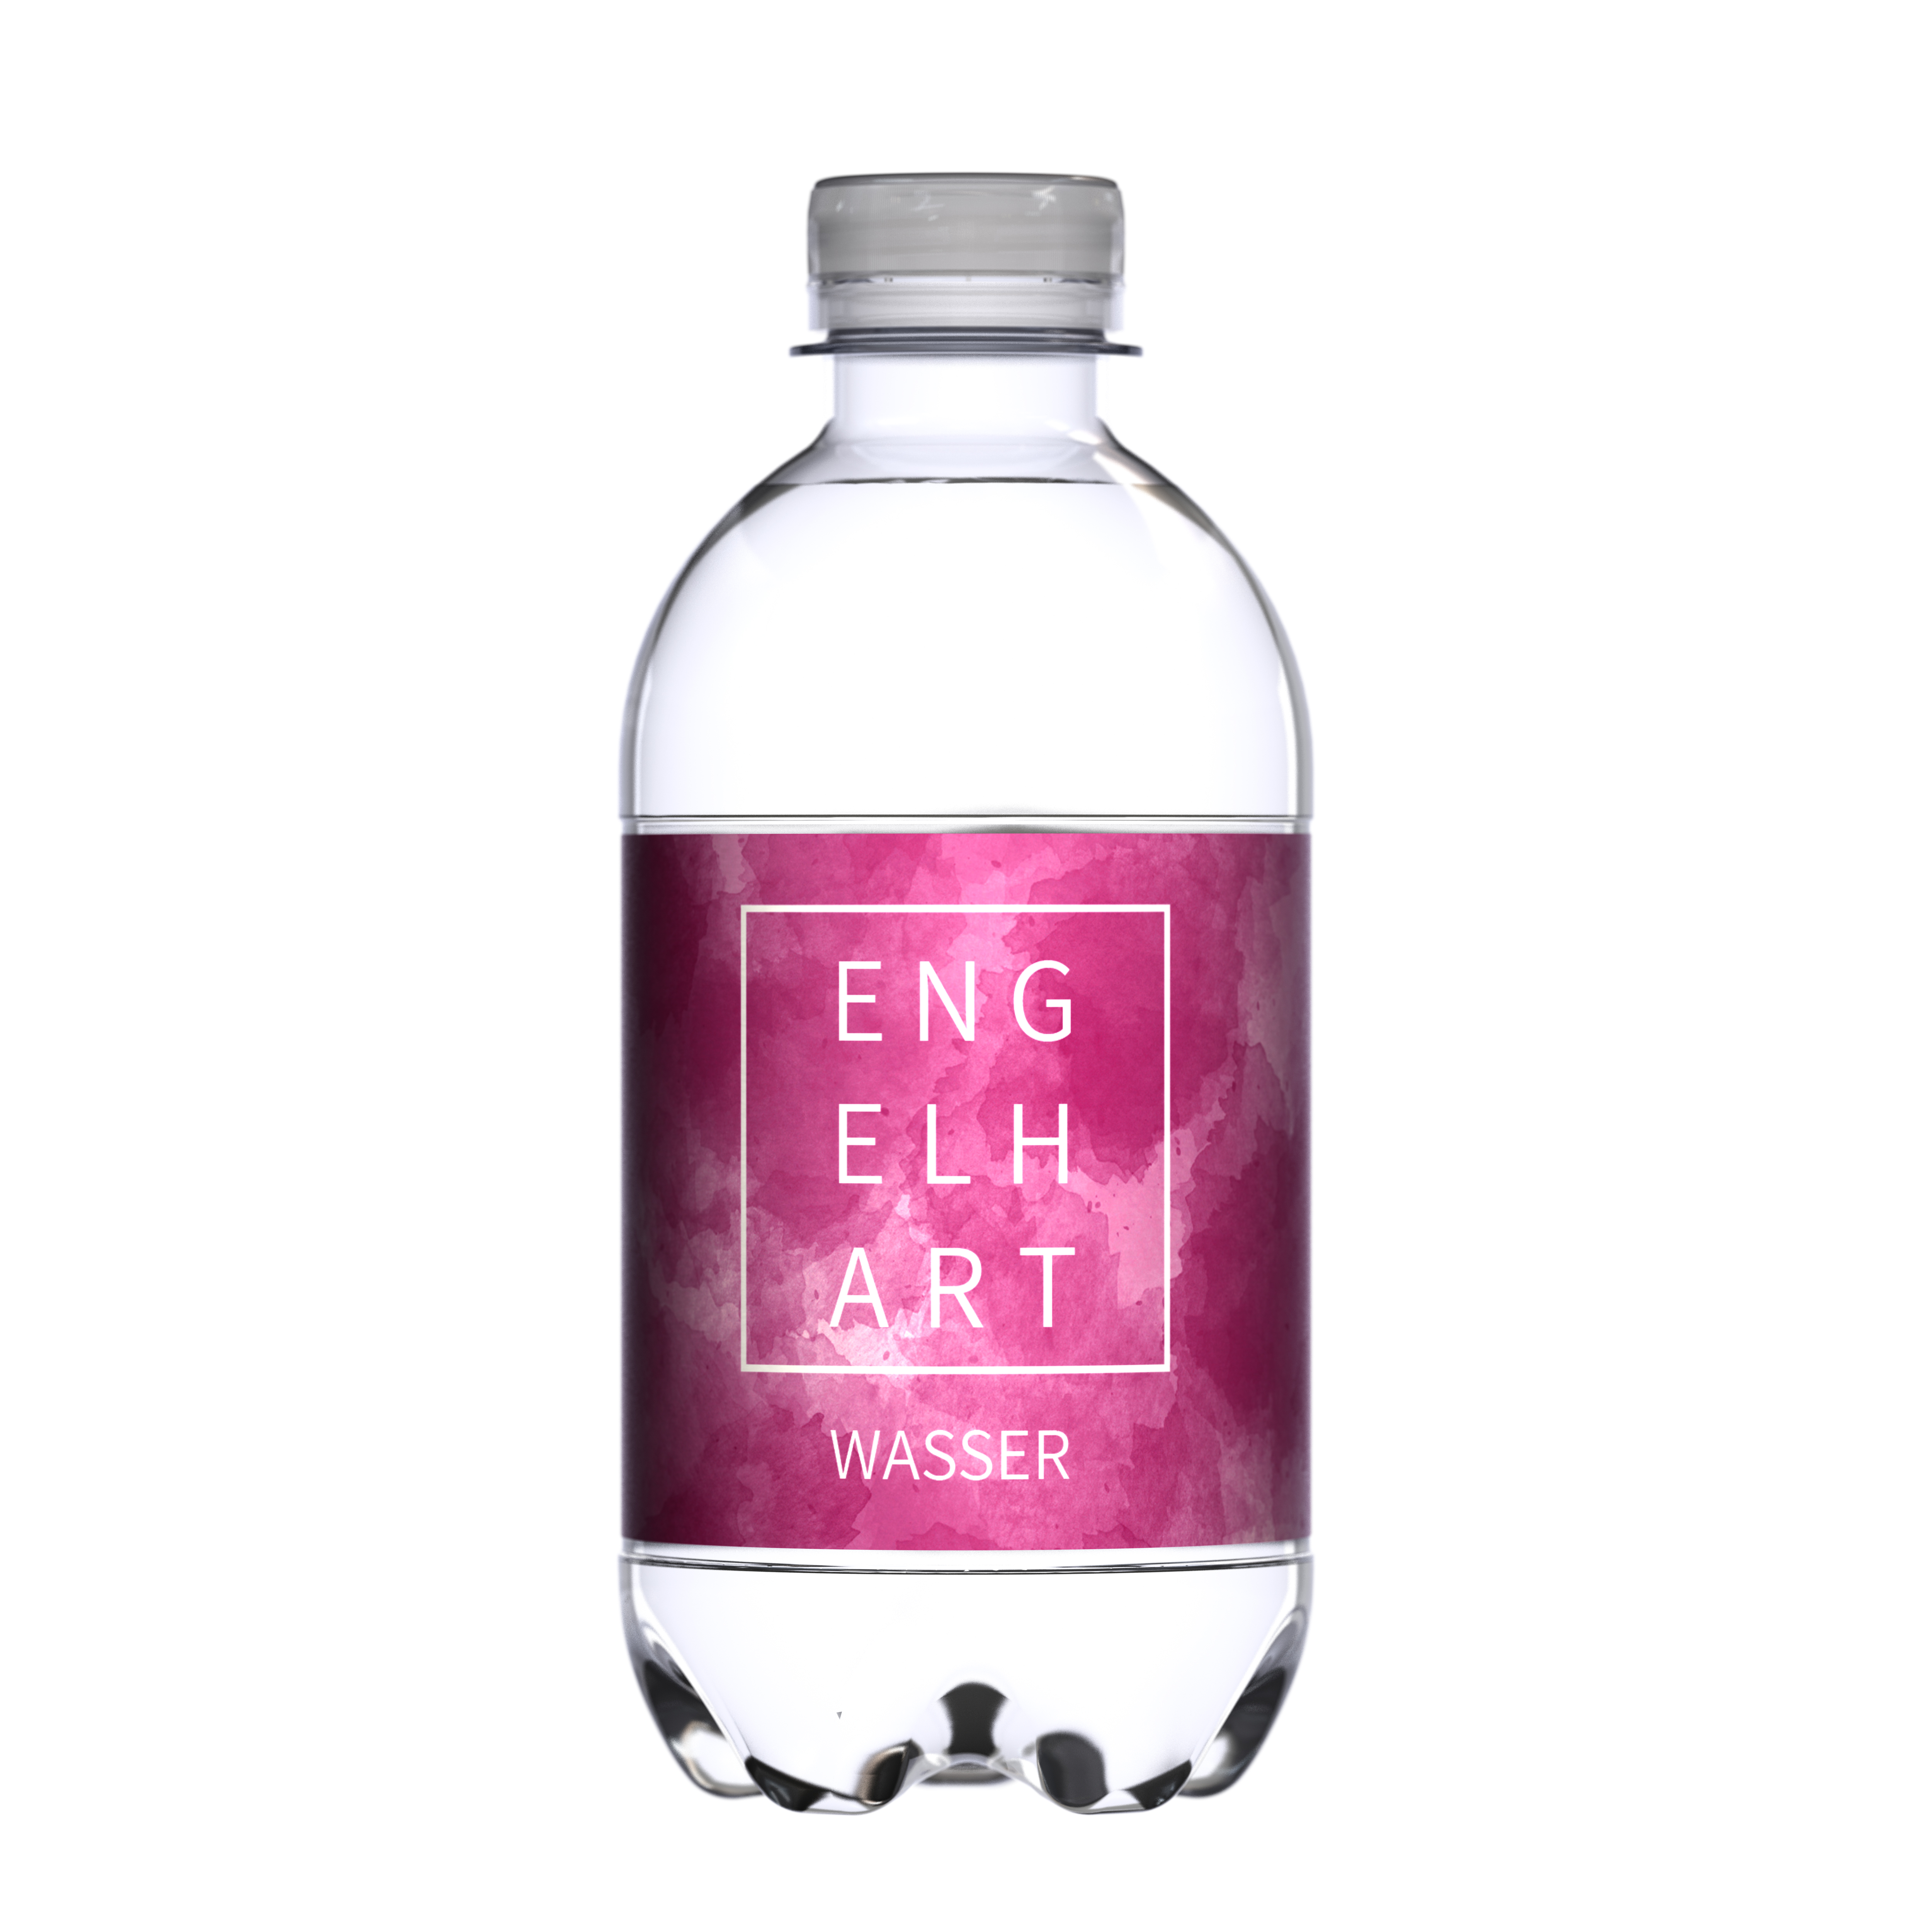 330 ml Mineralwasser still (Flasche Classic) - Smart Label (Export - Pfandfrei)